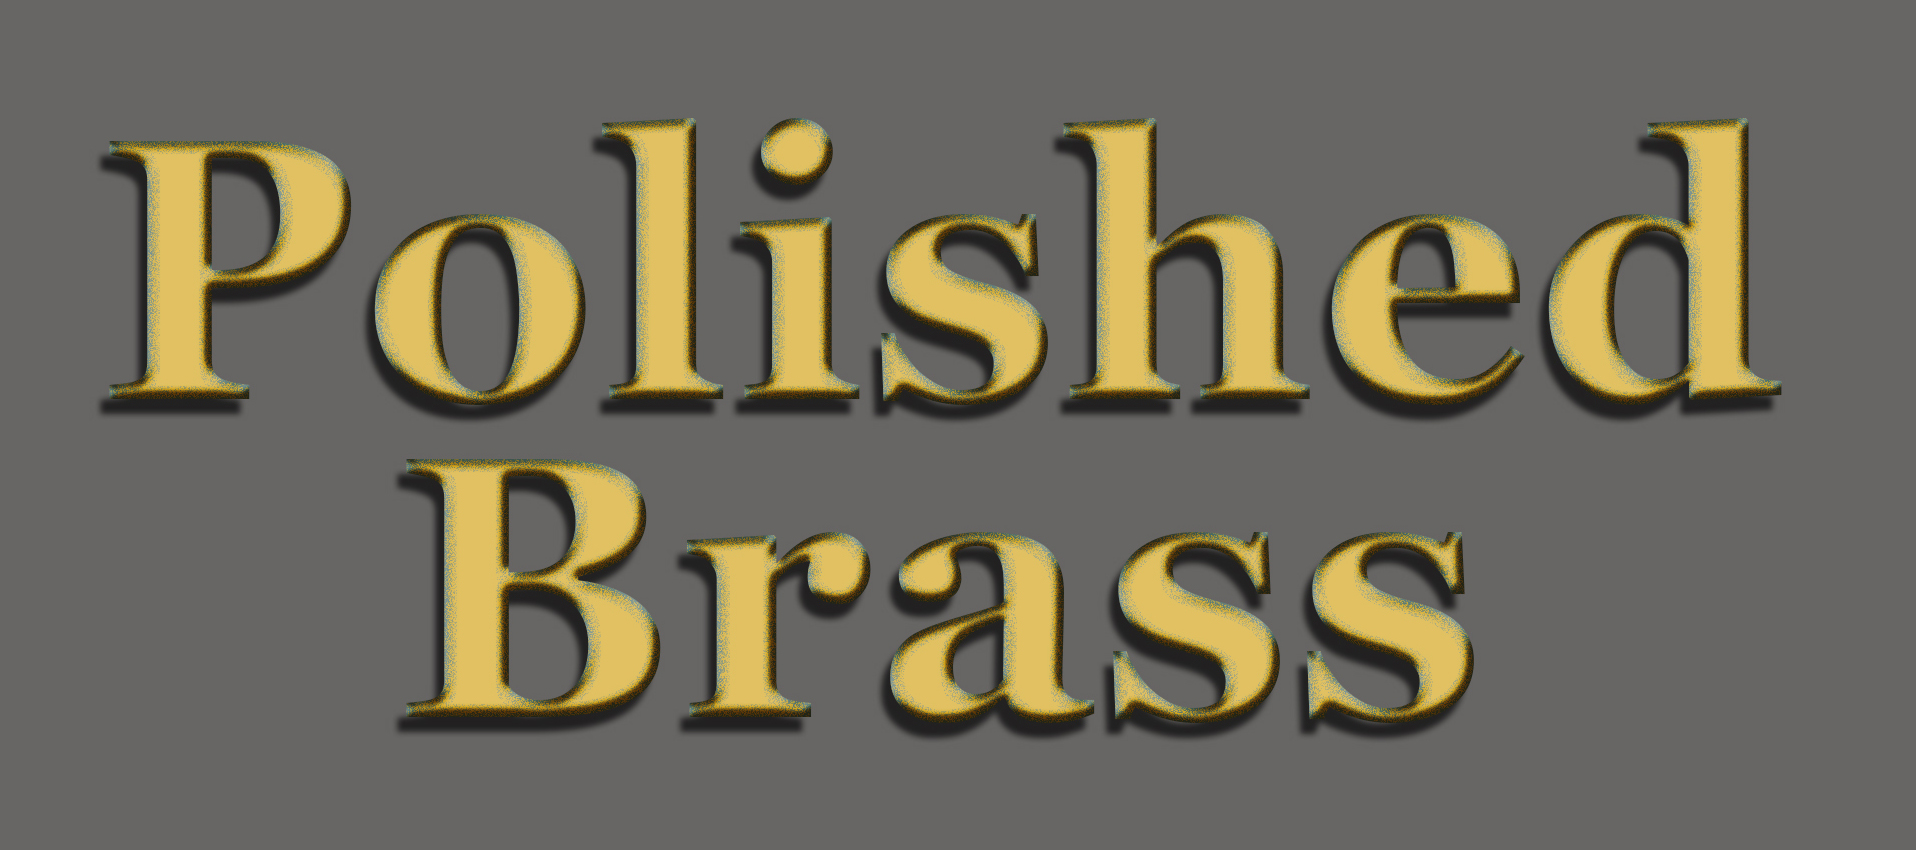 polished brass